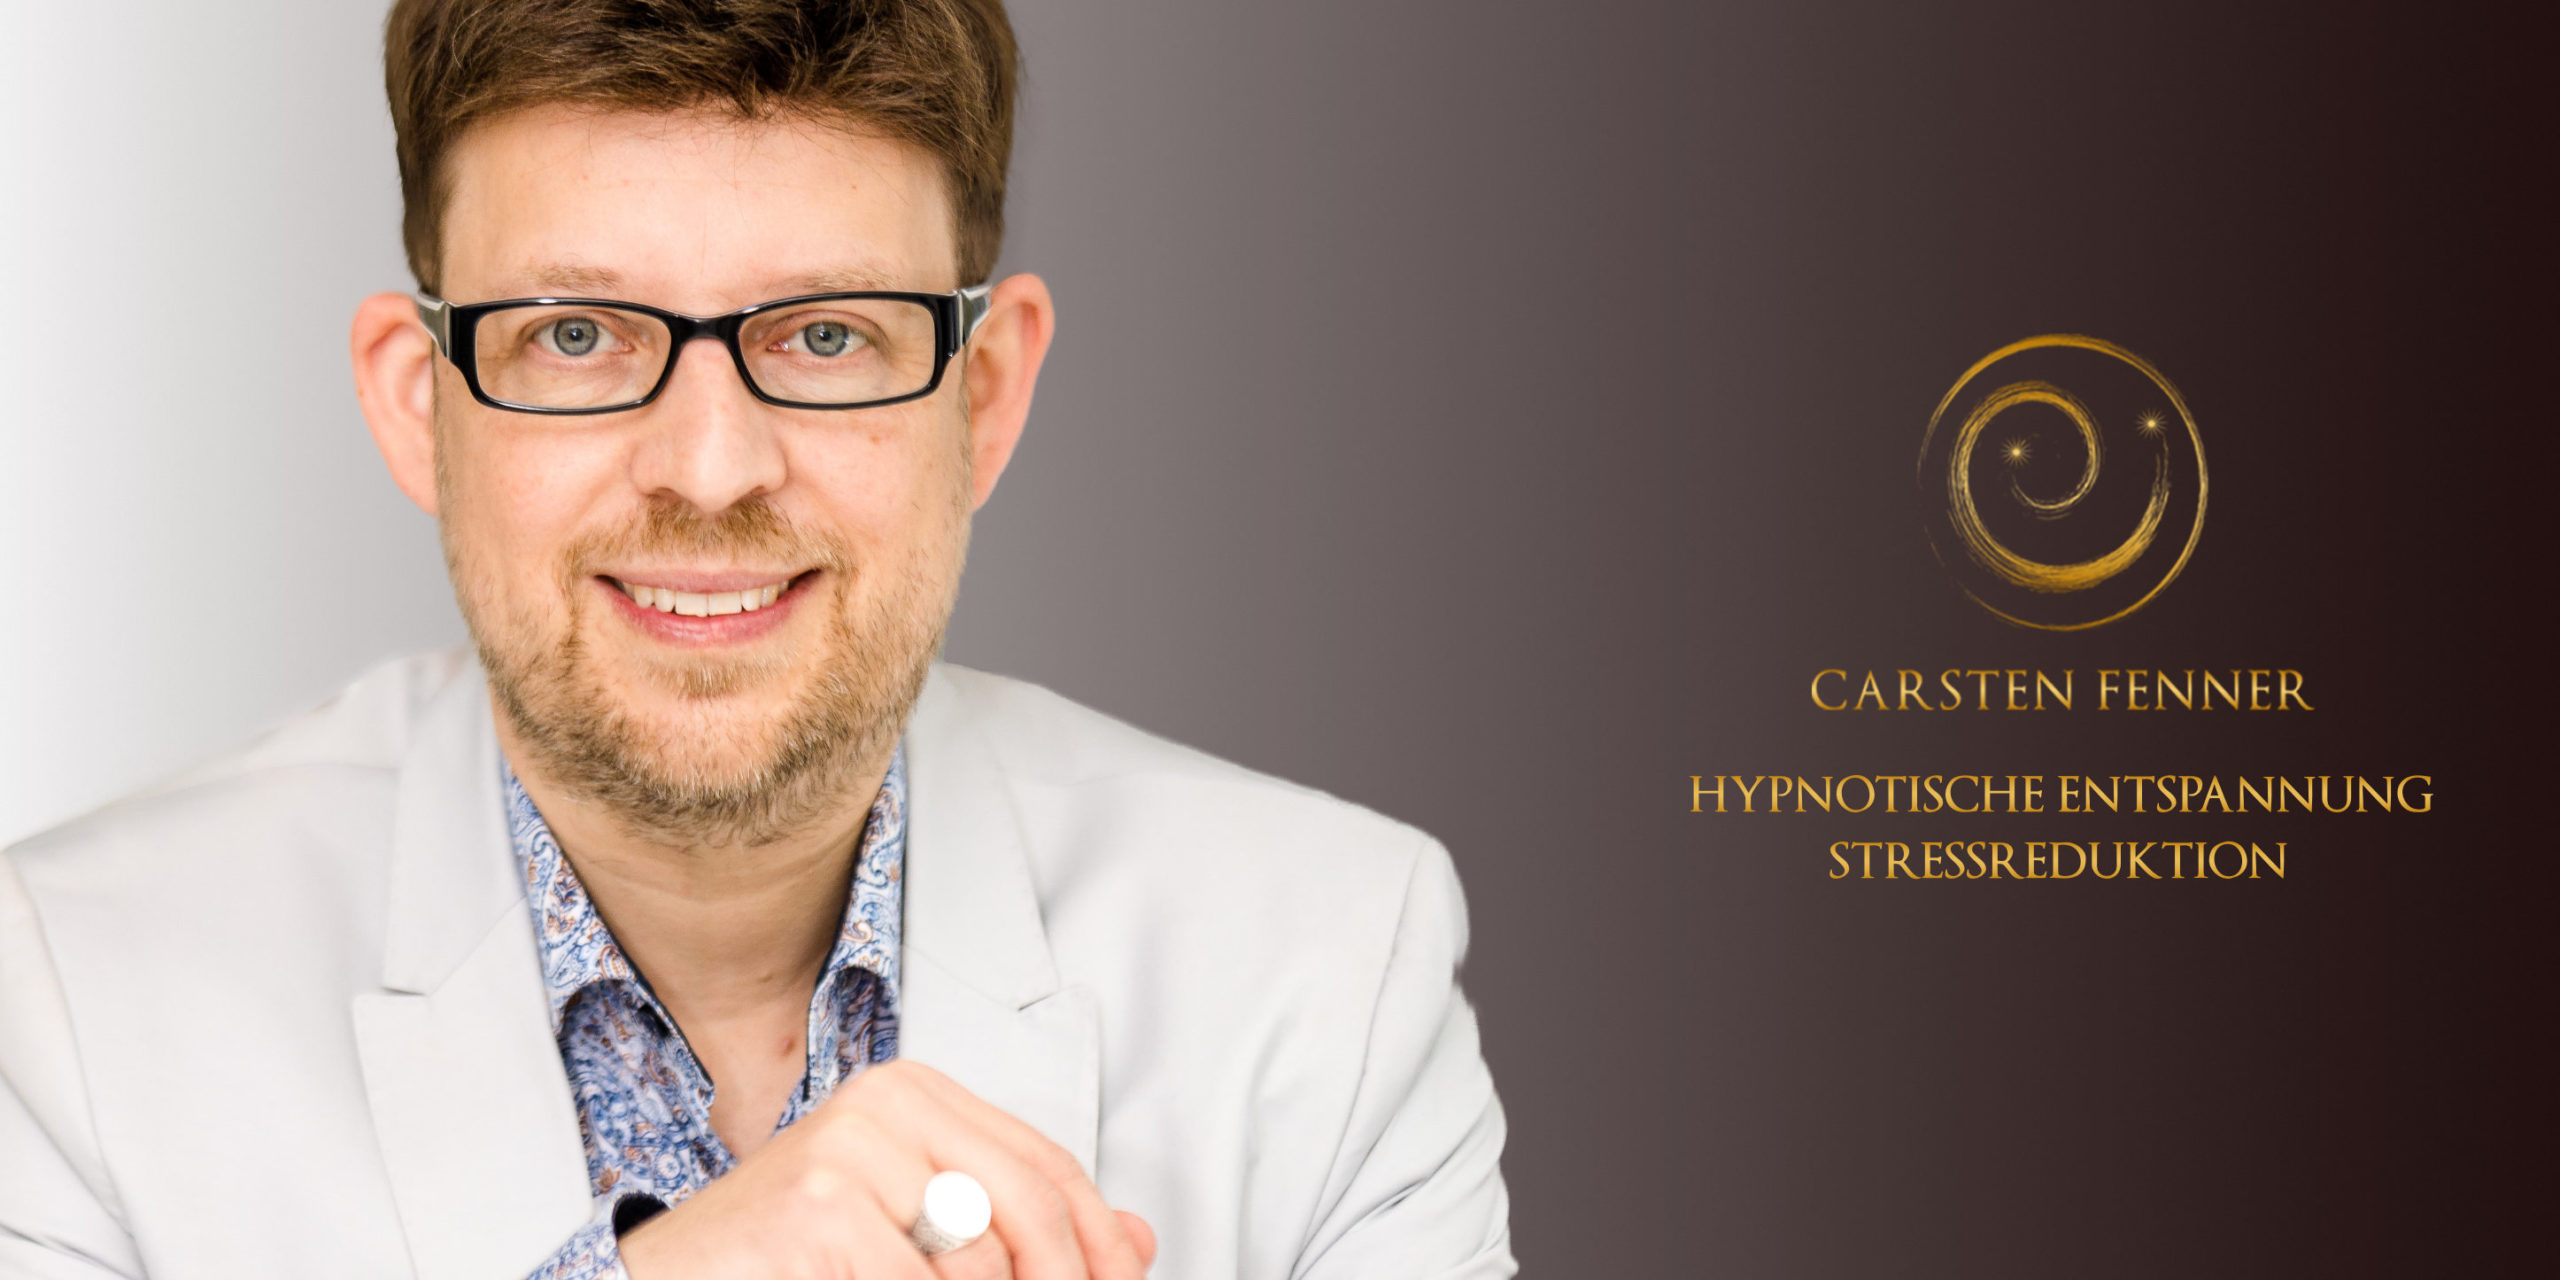 Showhypnotiseur Carsten Fenner präsentiert seine Hypnoseshow Showhypnose live